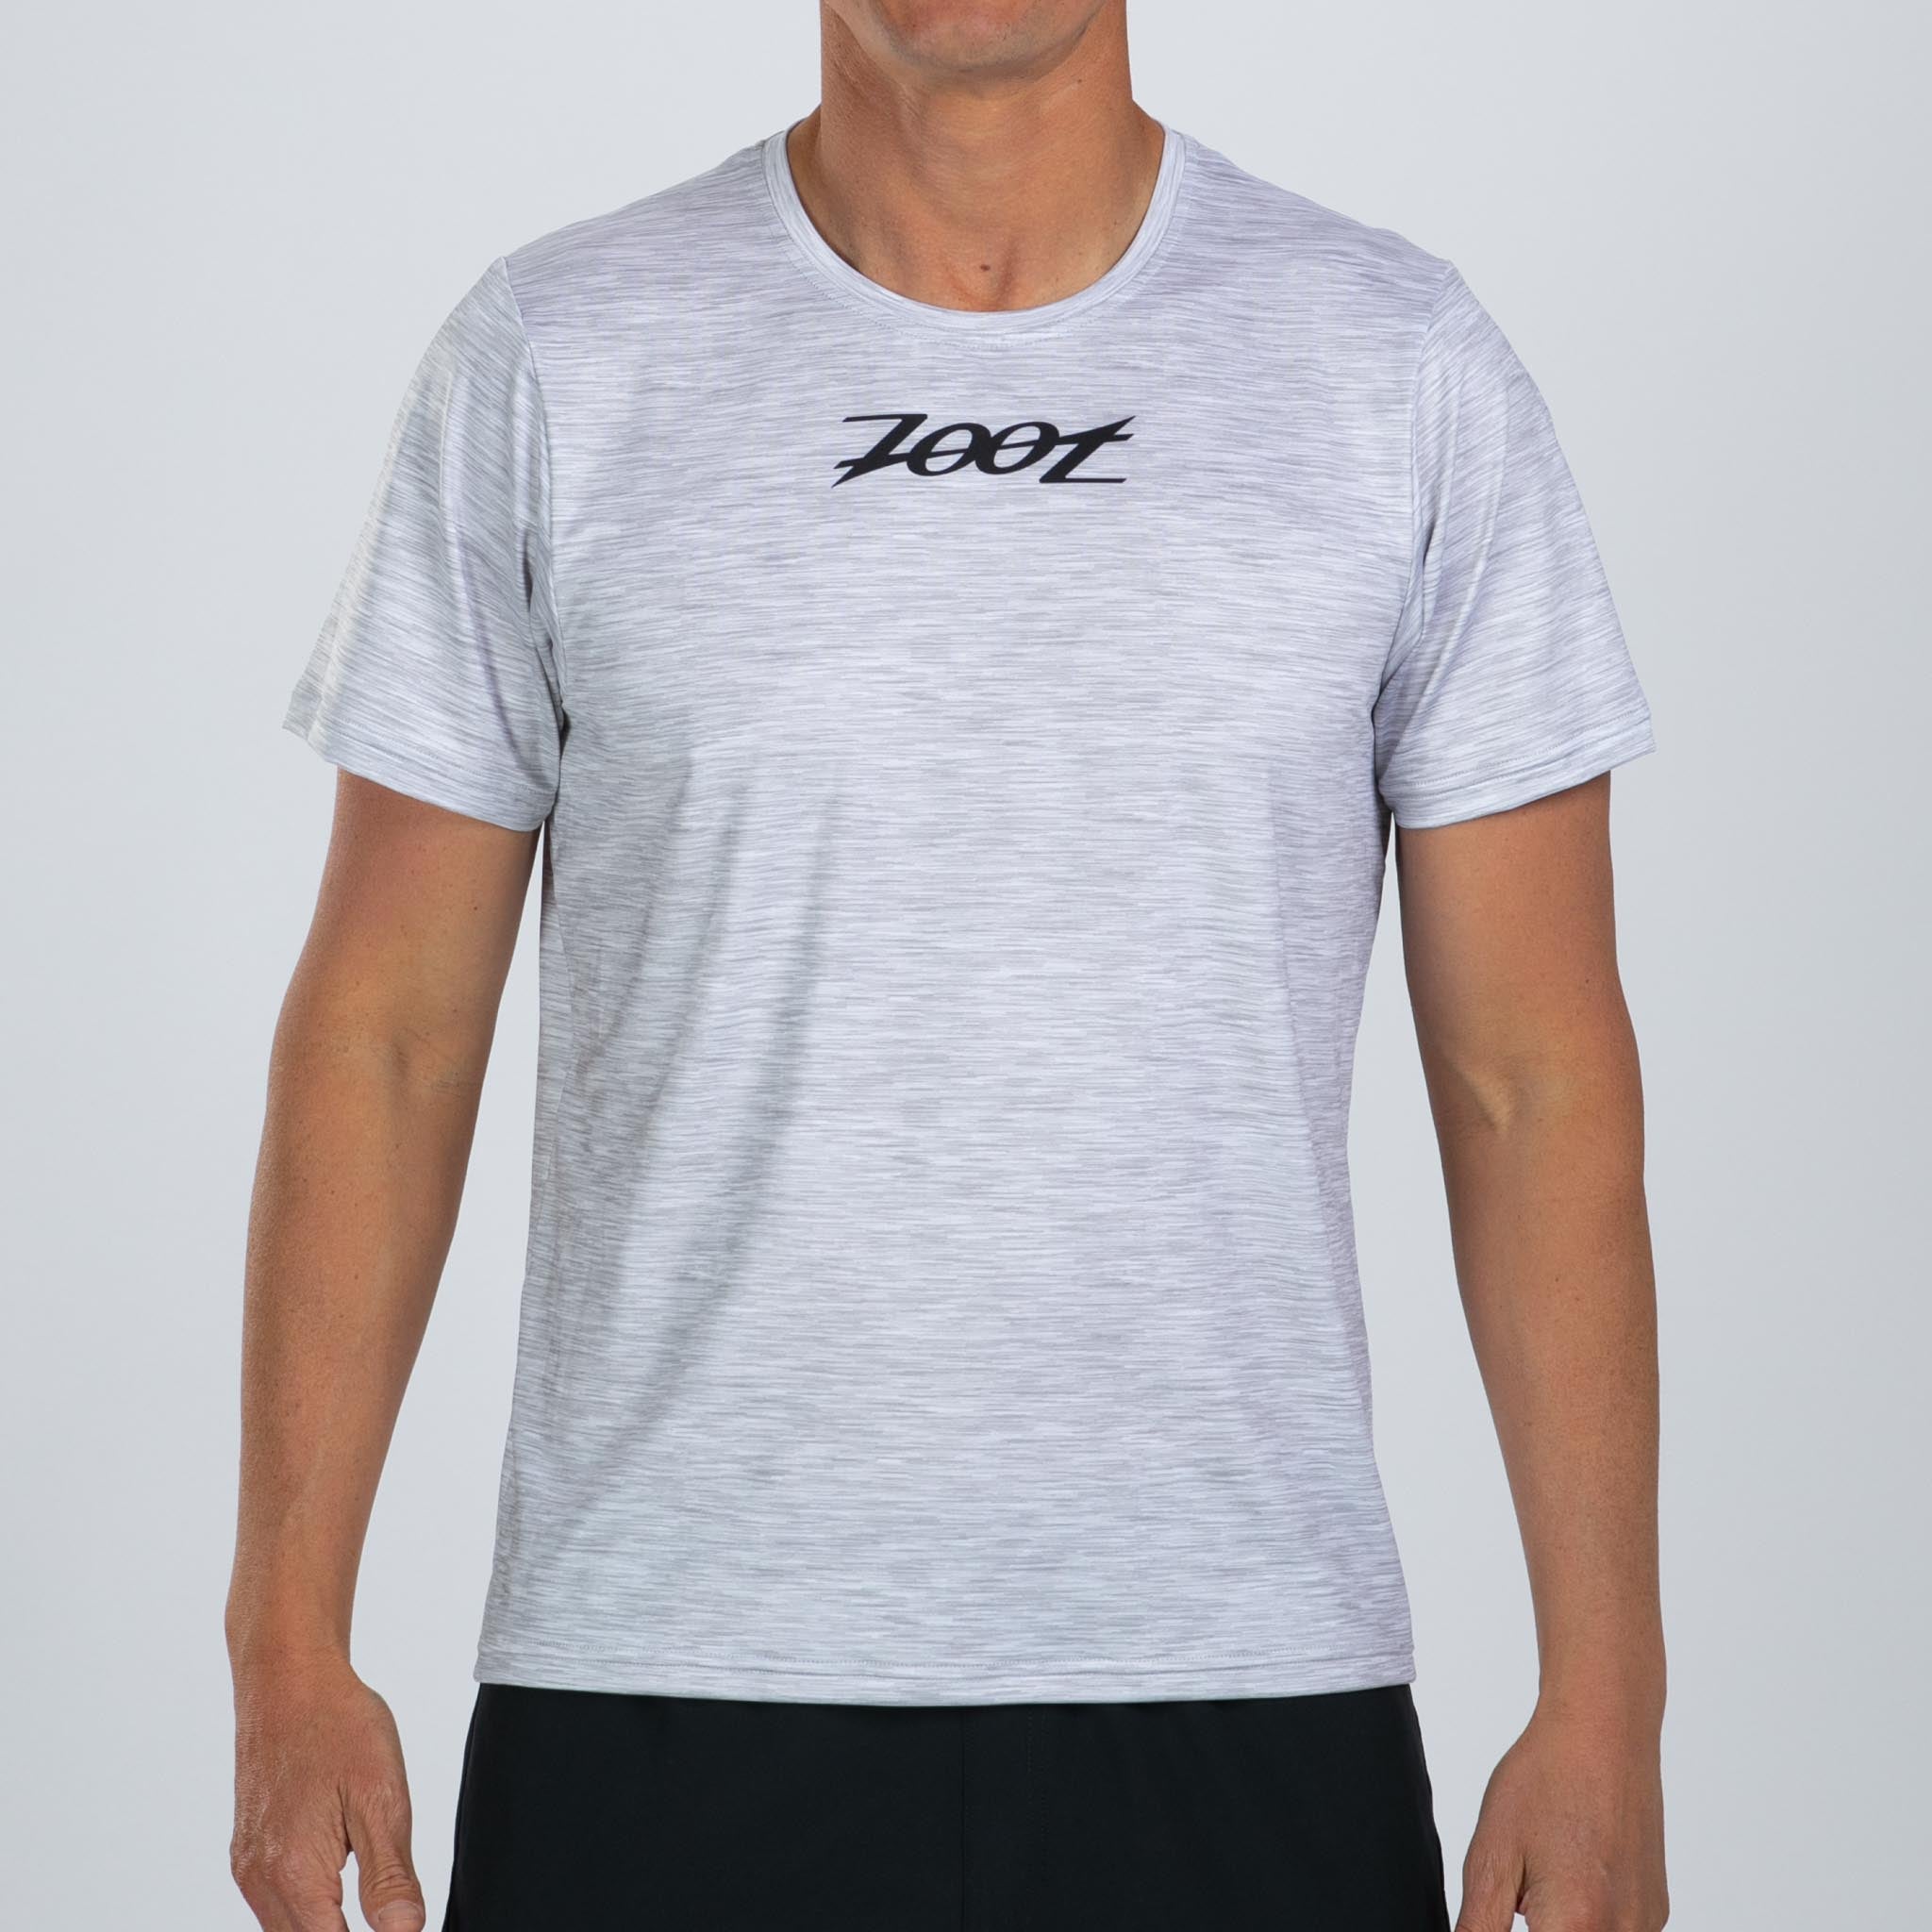 Zoot Sports RUN TEE Men's Ltd Run Tee - Heather Gray